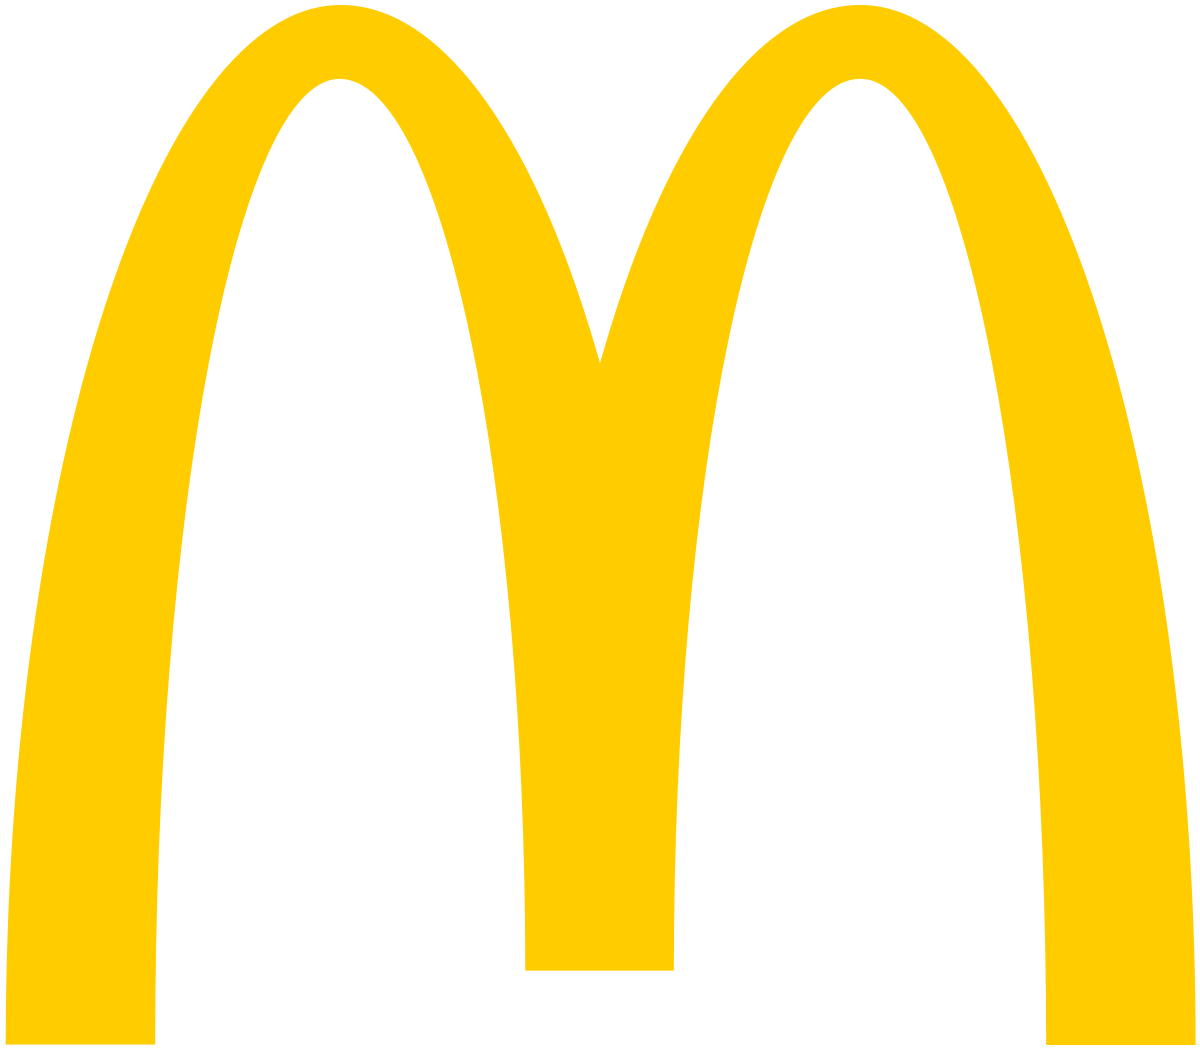 McDonald’s podpisał pierwszy w Polsce Kodeks Dobrych Praktyk dla rynku franczyzy